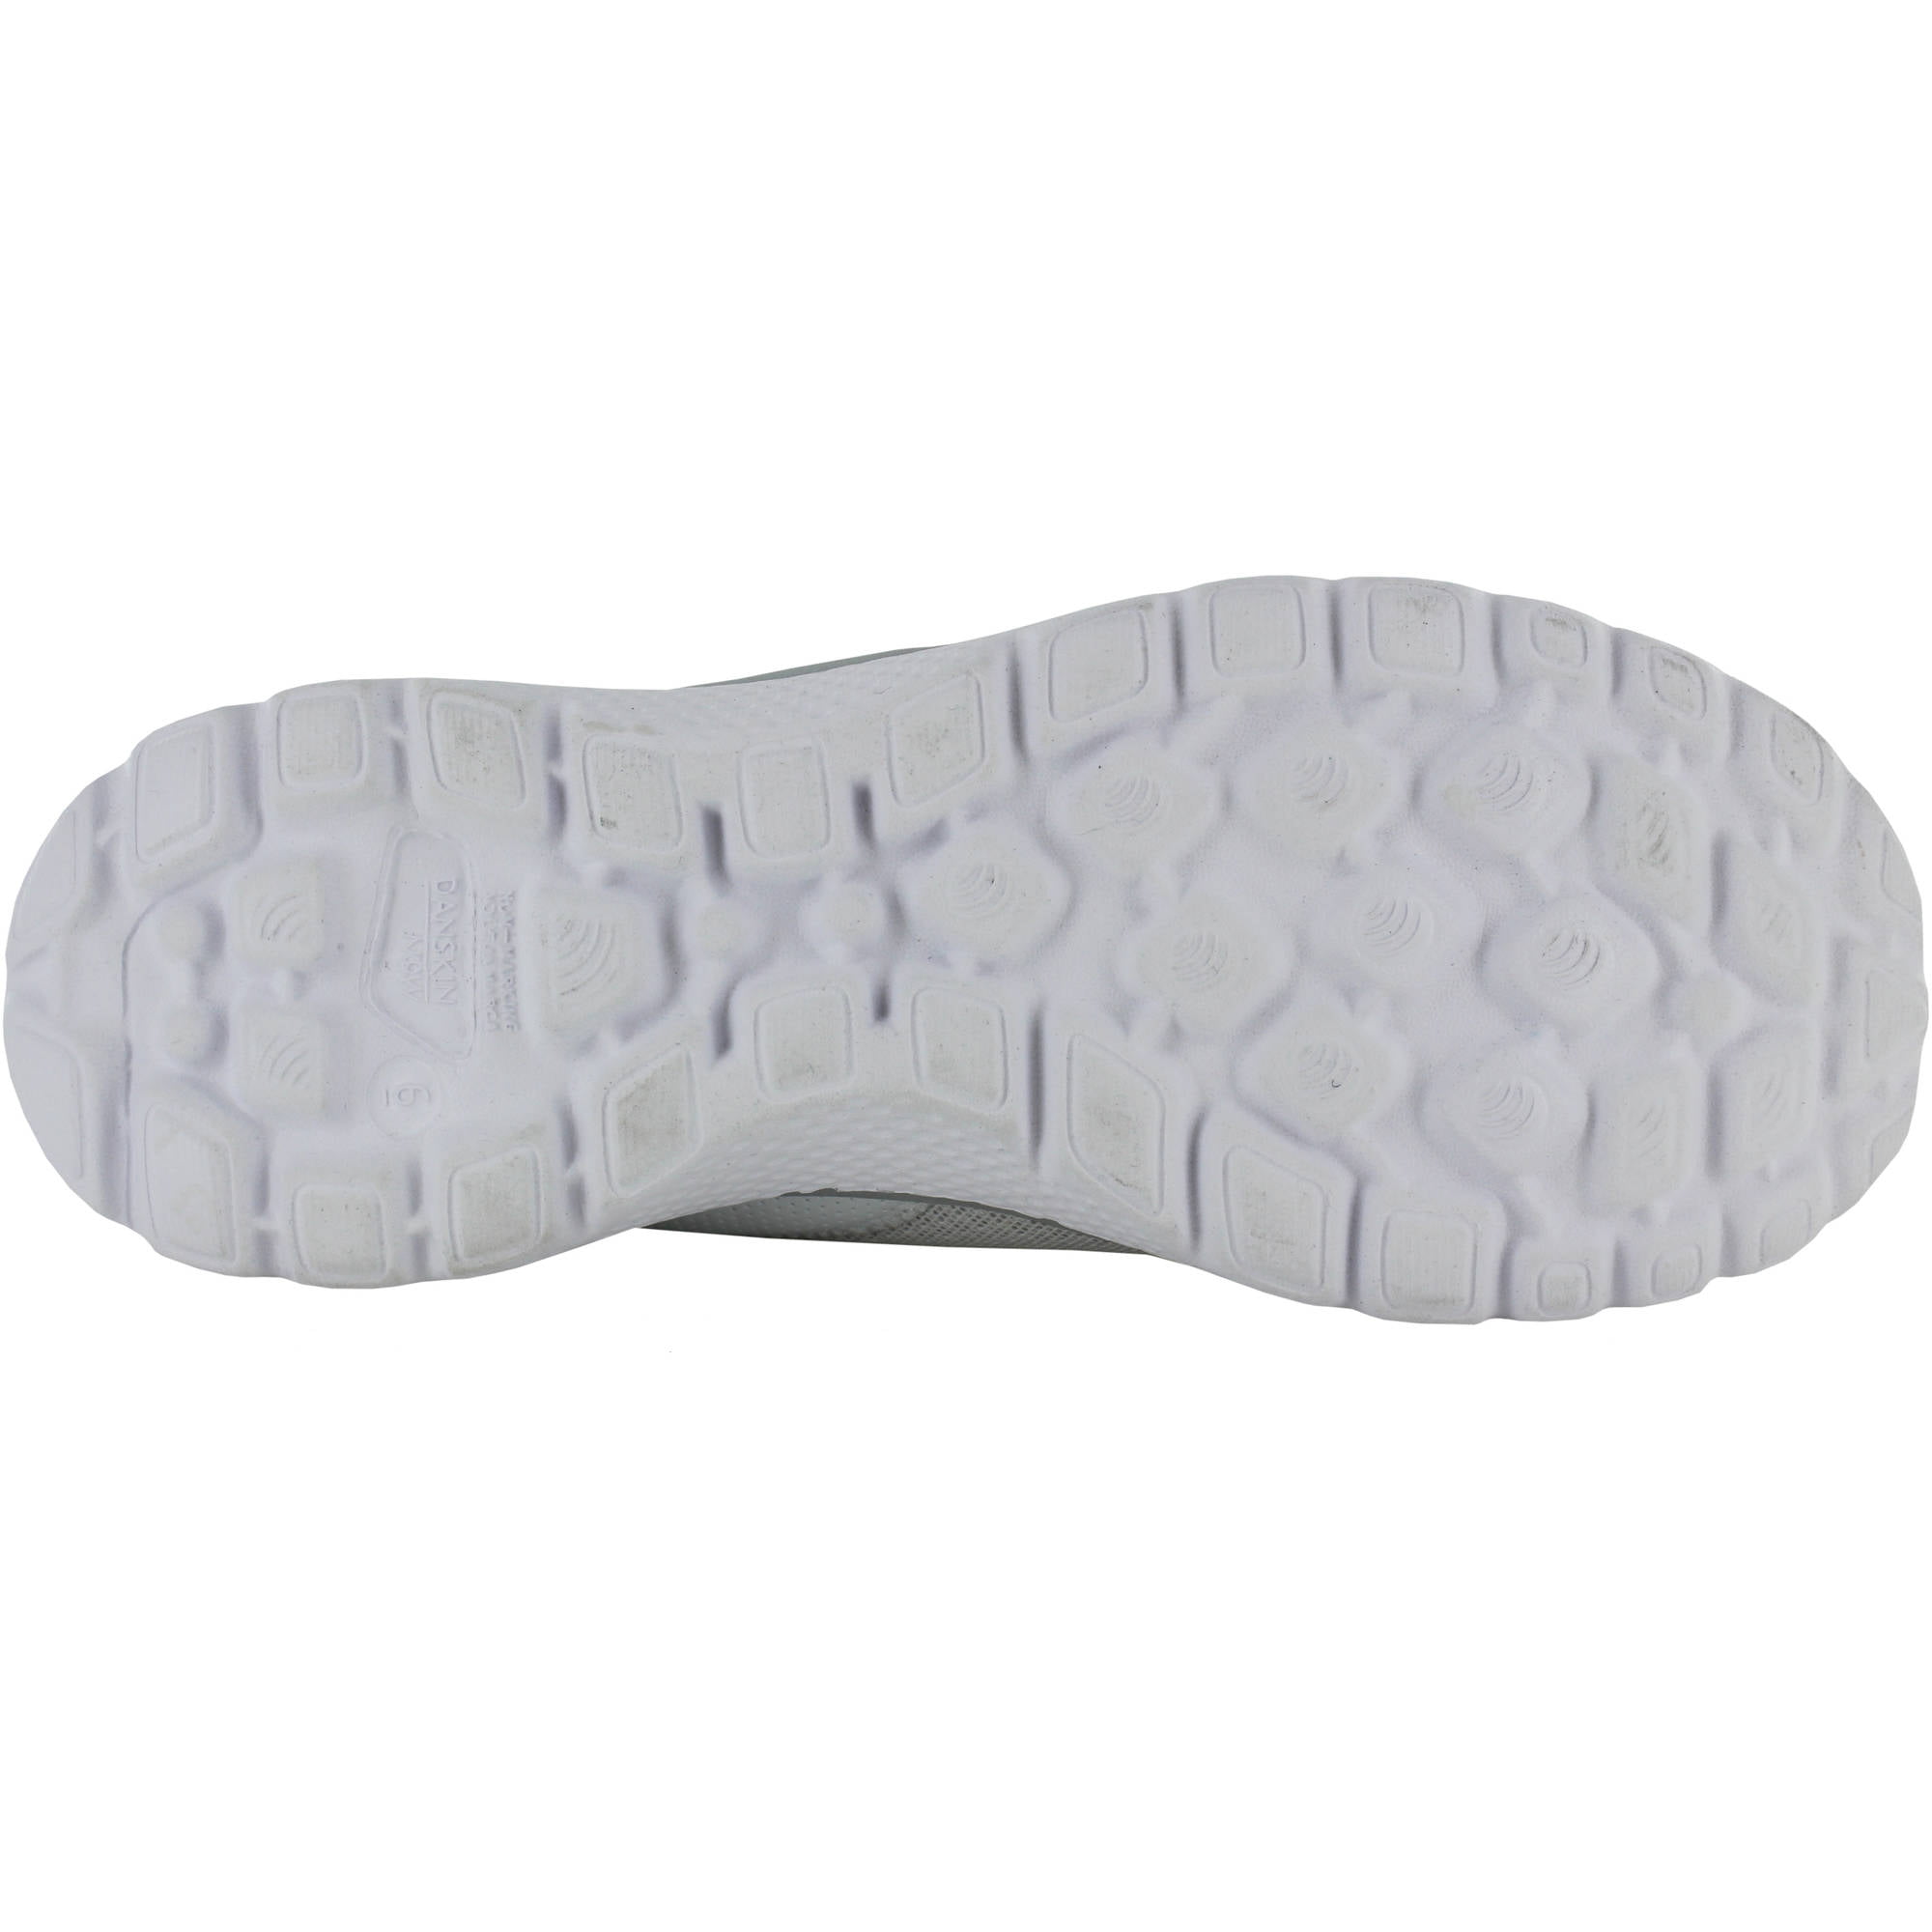 Danskin Now Women's Memory Foam Athletic Slip-on Shoe